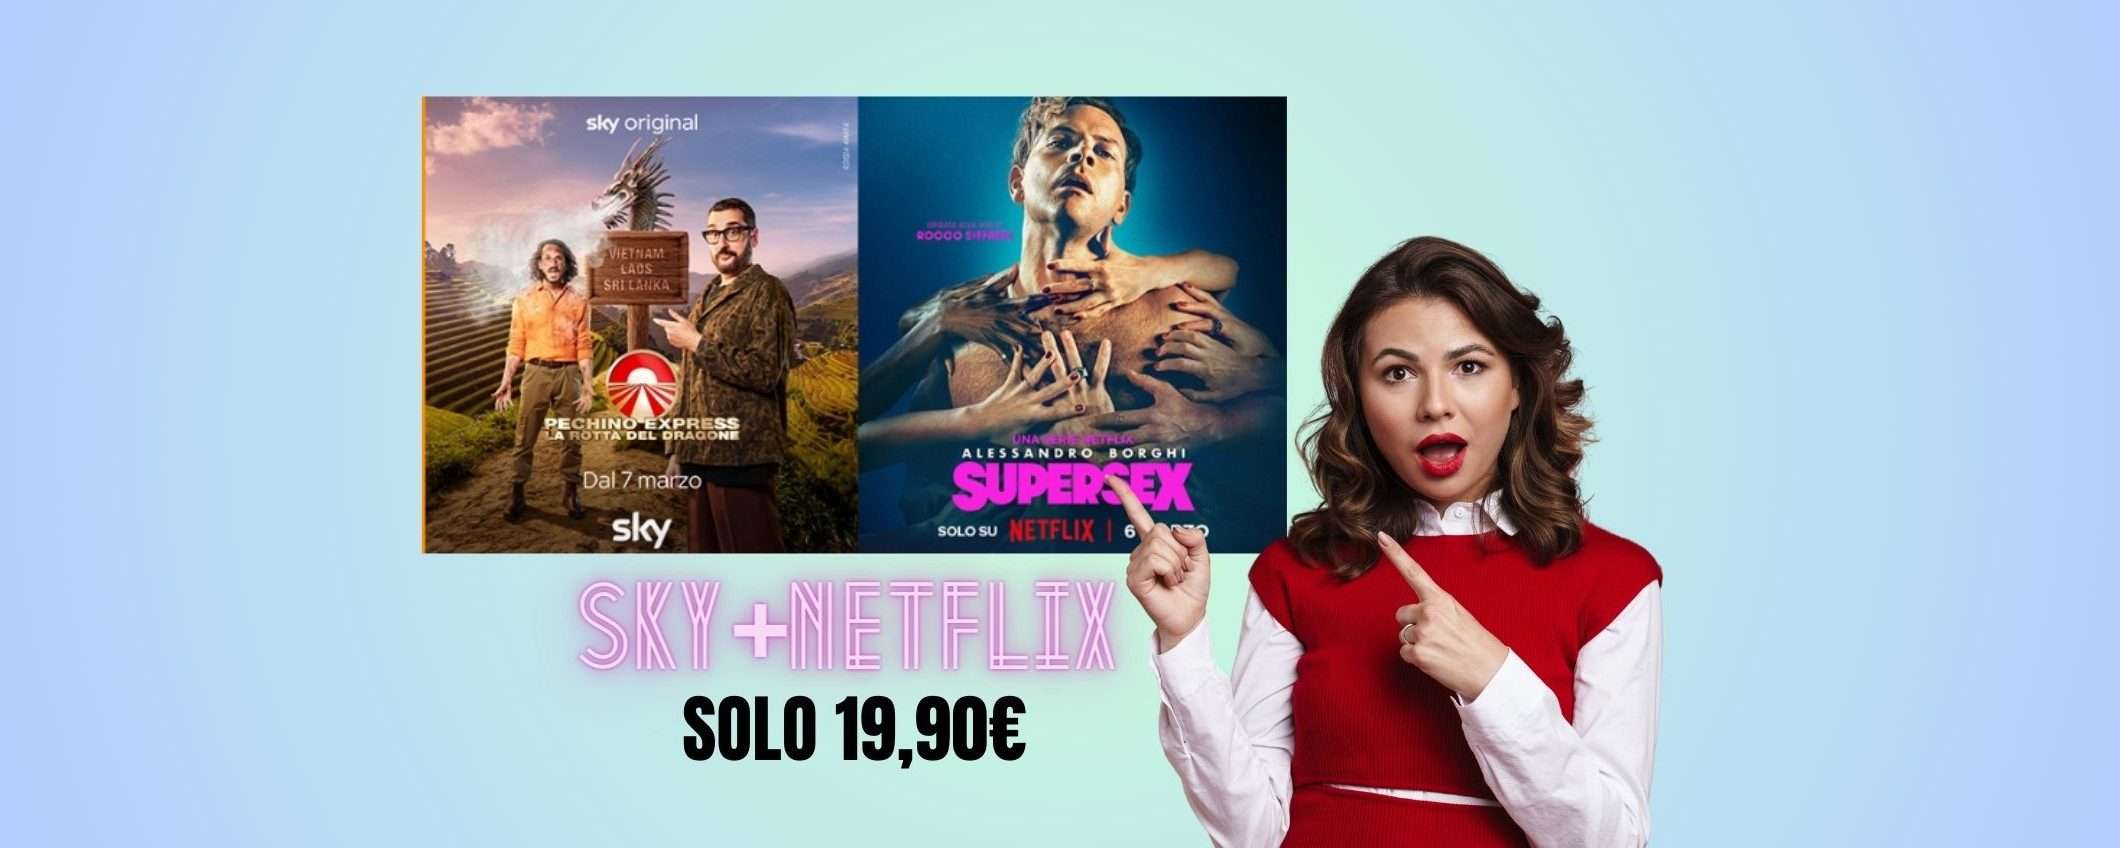 Tutto Sky e Netflix a meno di 20€: affrettati, scade il 20 marzo